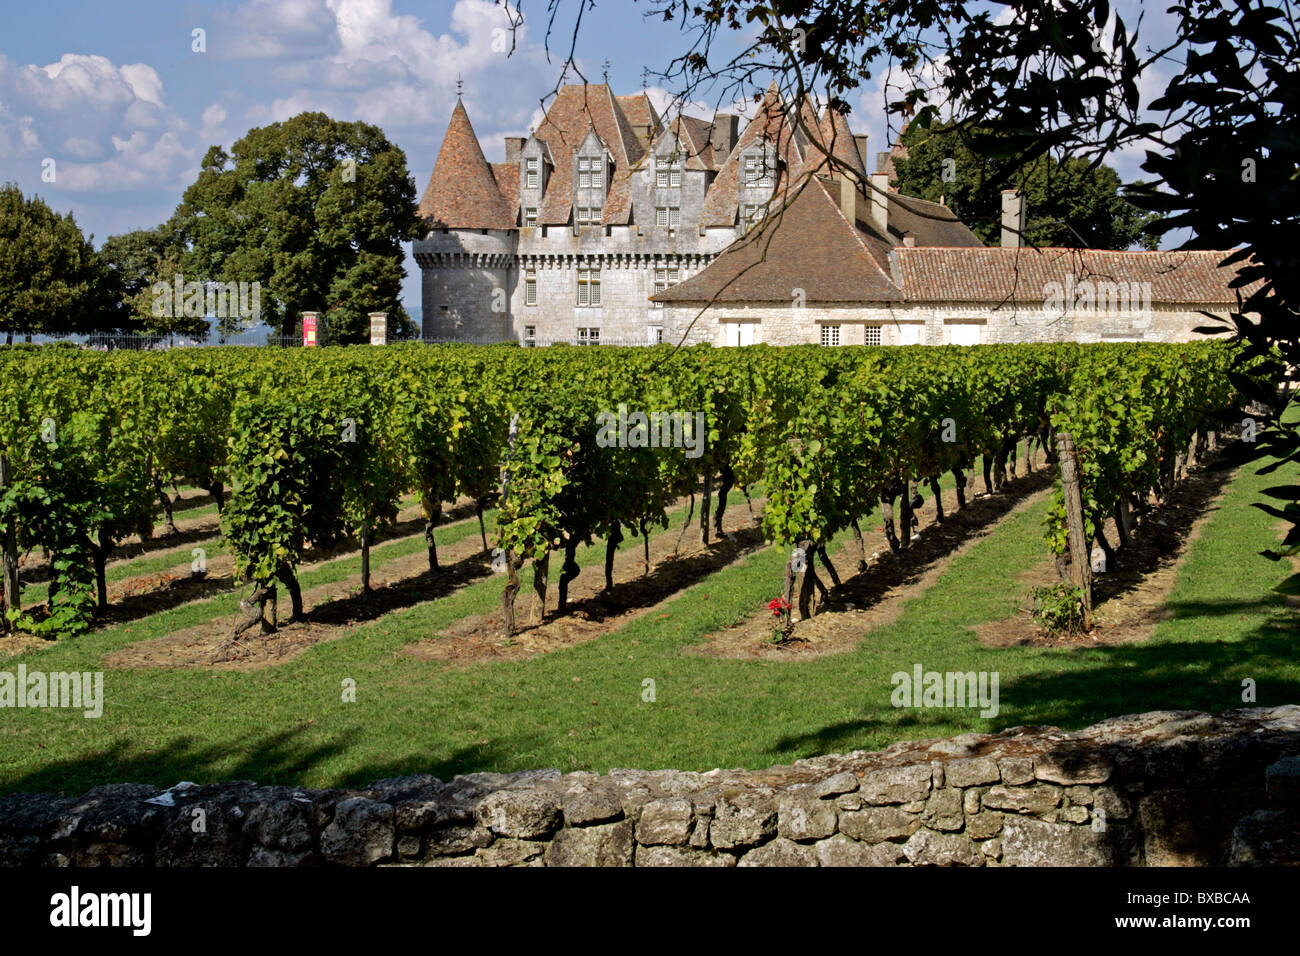 Chateau vignoble de Monbazillac, Dordogne, Aquitaine, France, Europe Banque D'Images